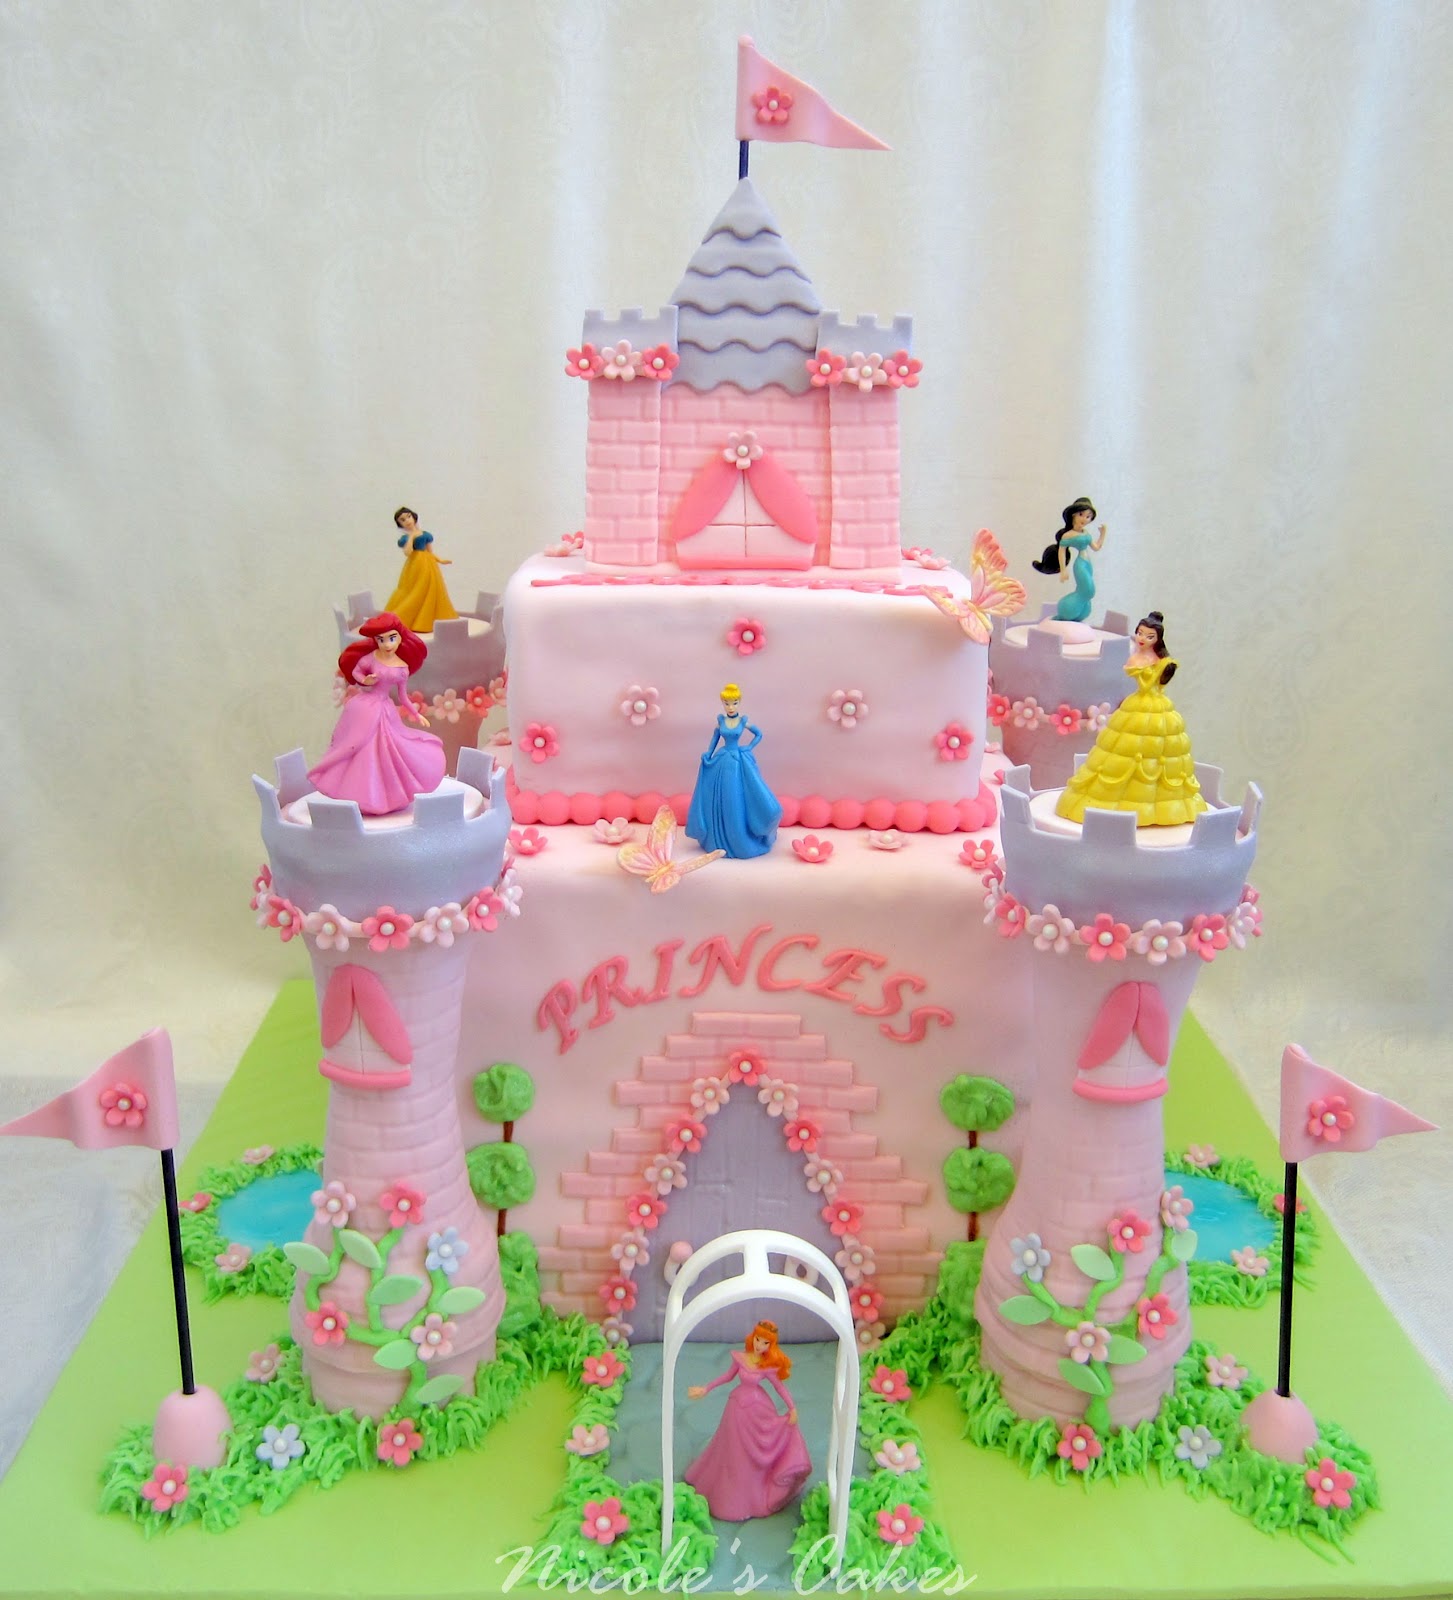 12 Photos of Princess Cakes Gallery